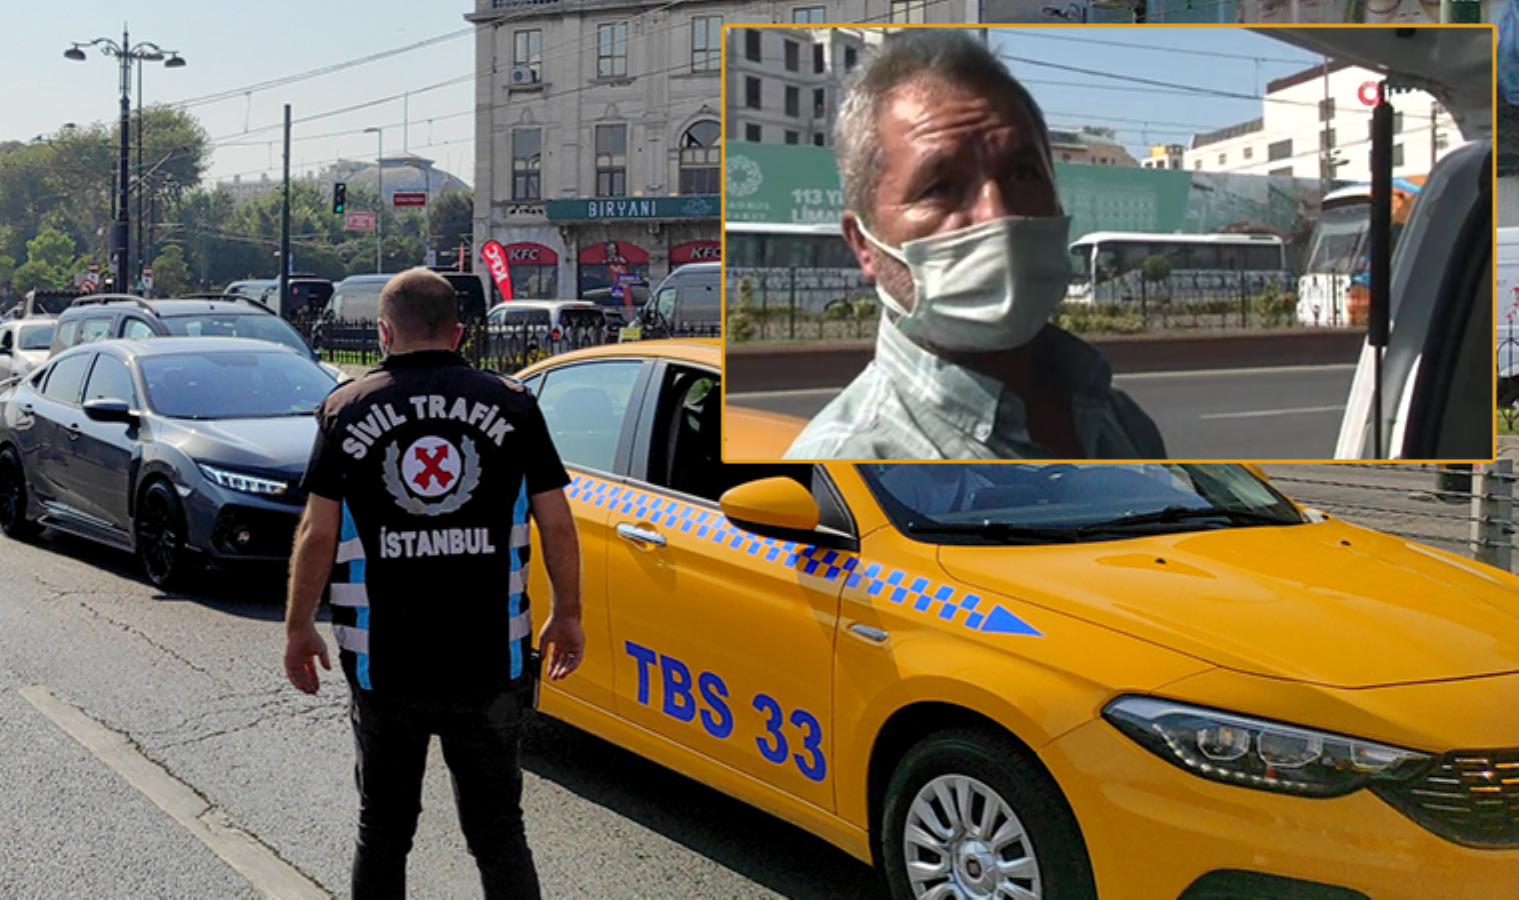 Ceza yiyen taksi sürücüsü : Kesinlikle hak ediyoruz